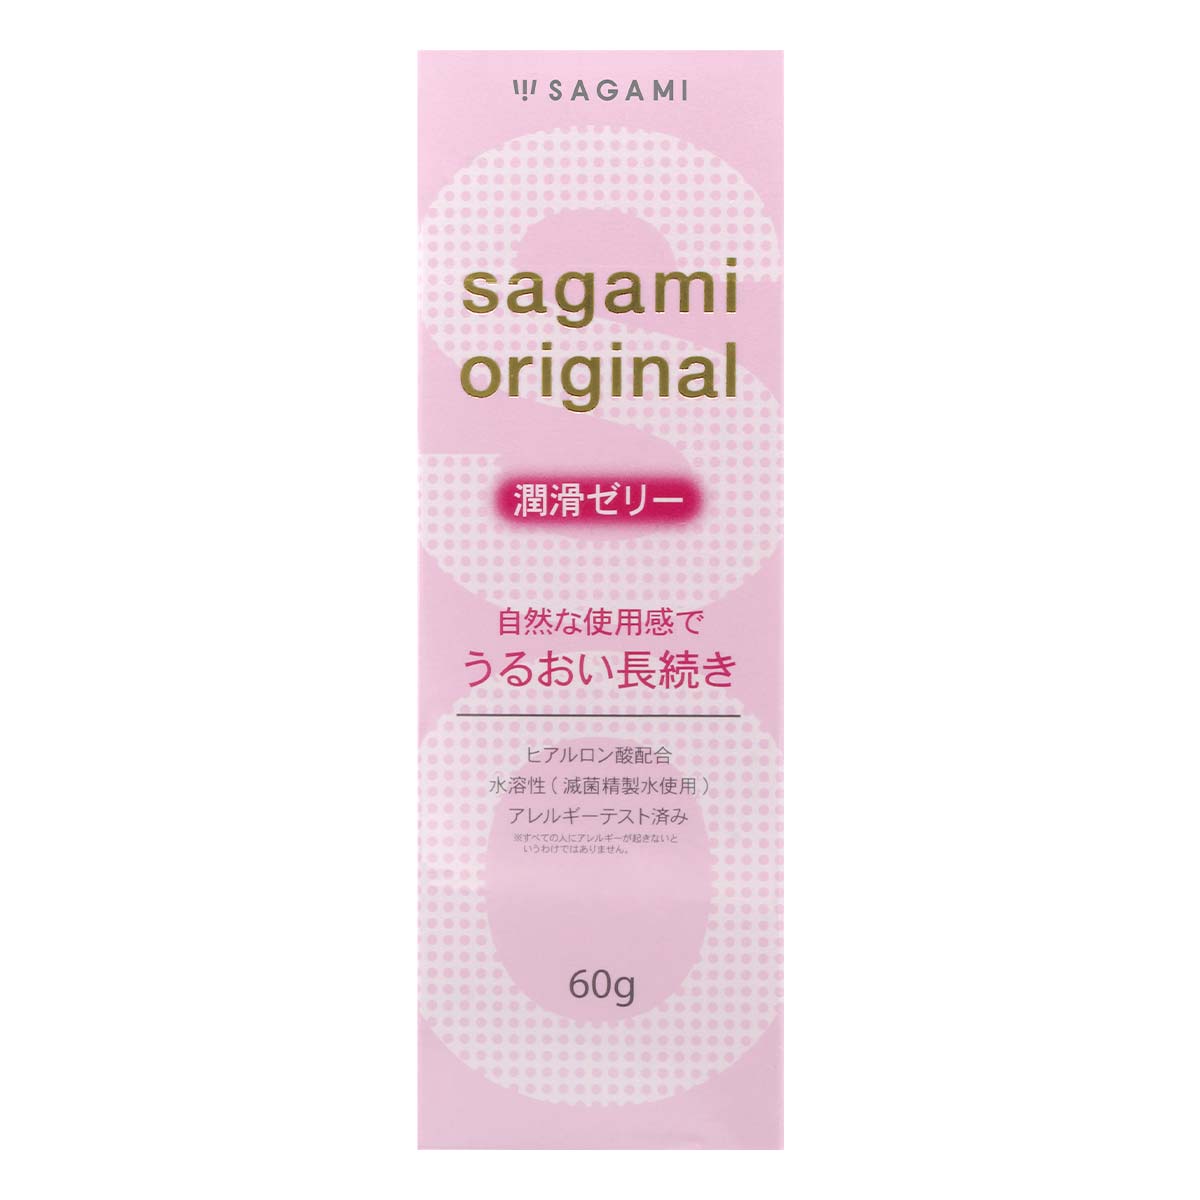 Sagami Original Lubricating Gel 60g Water-based Lubricant-p_2